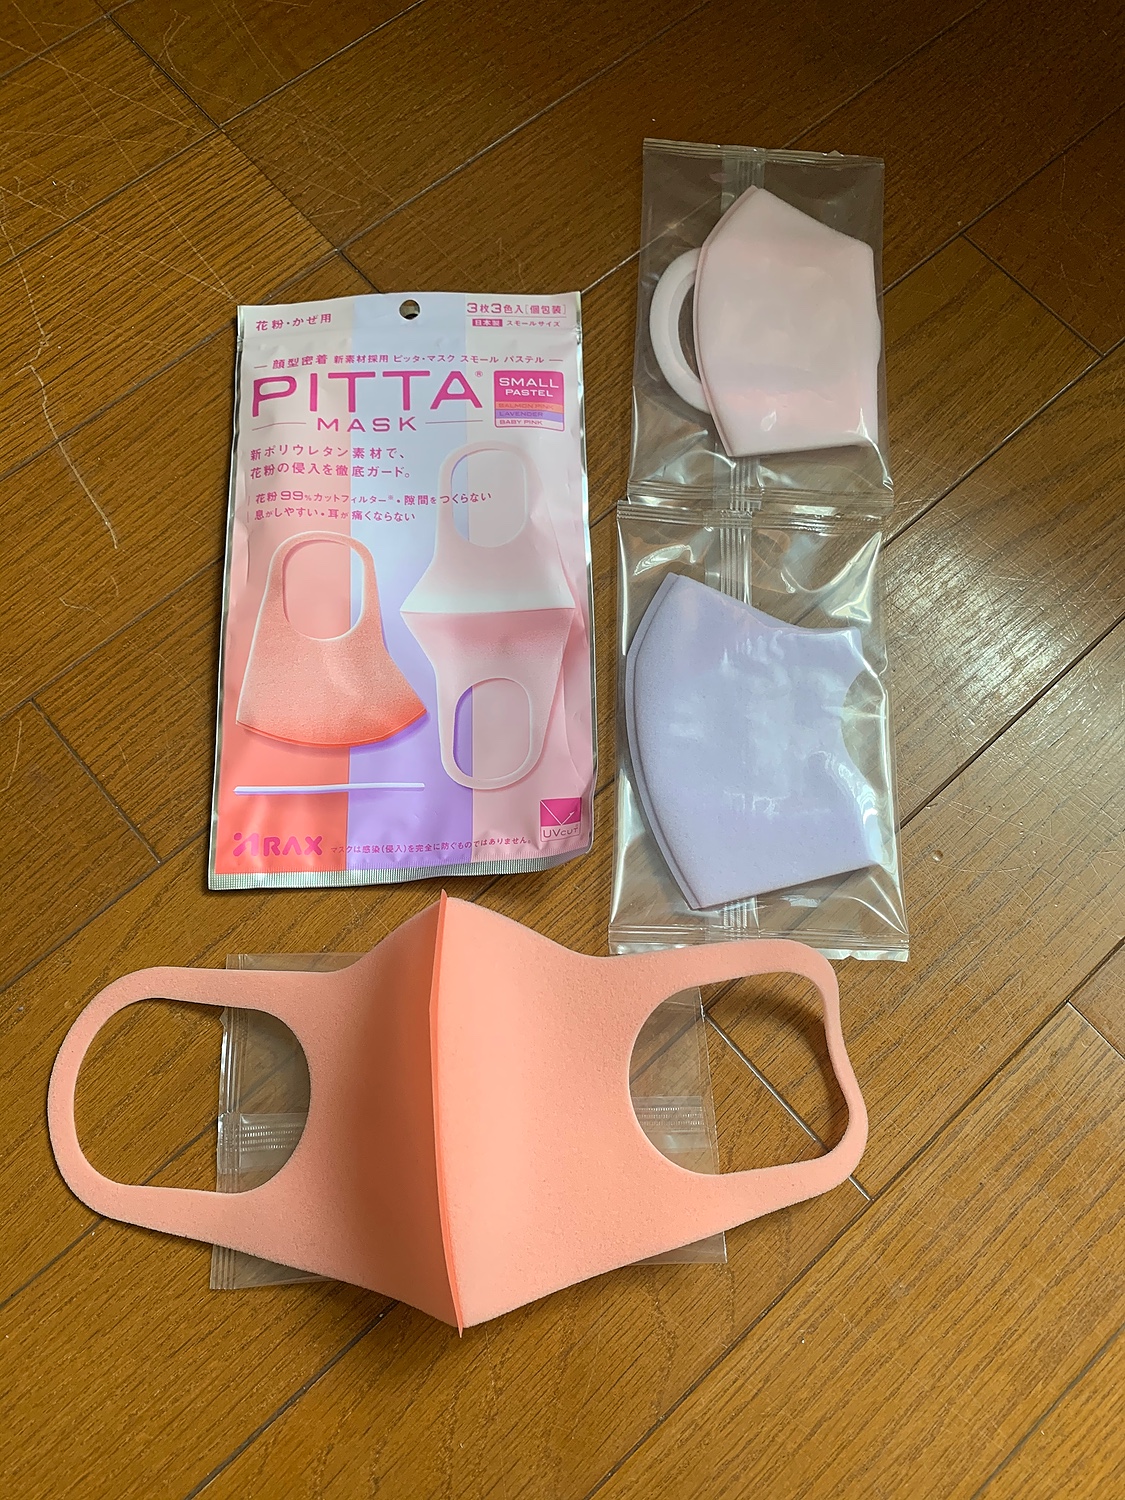 楽天市場 メール便送料無料 キャンセル不可商品 Pitta Mask ピッタマスク Small Pastel スモール パステル 3枚入 タンセラショップ みんなのレビュー 口コミ